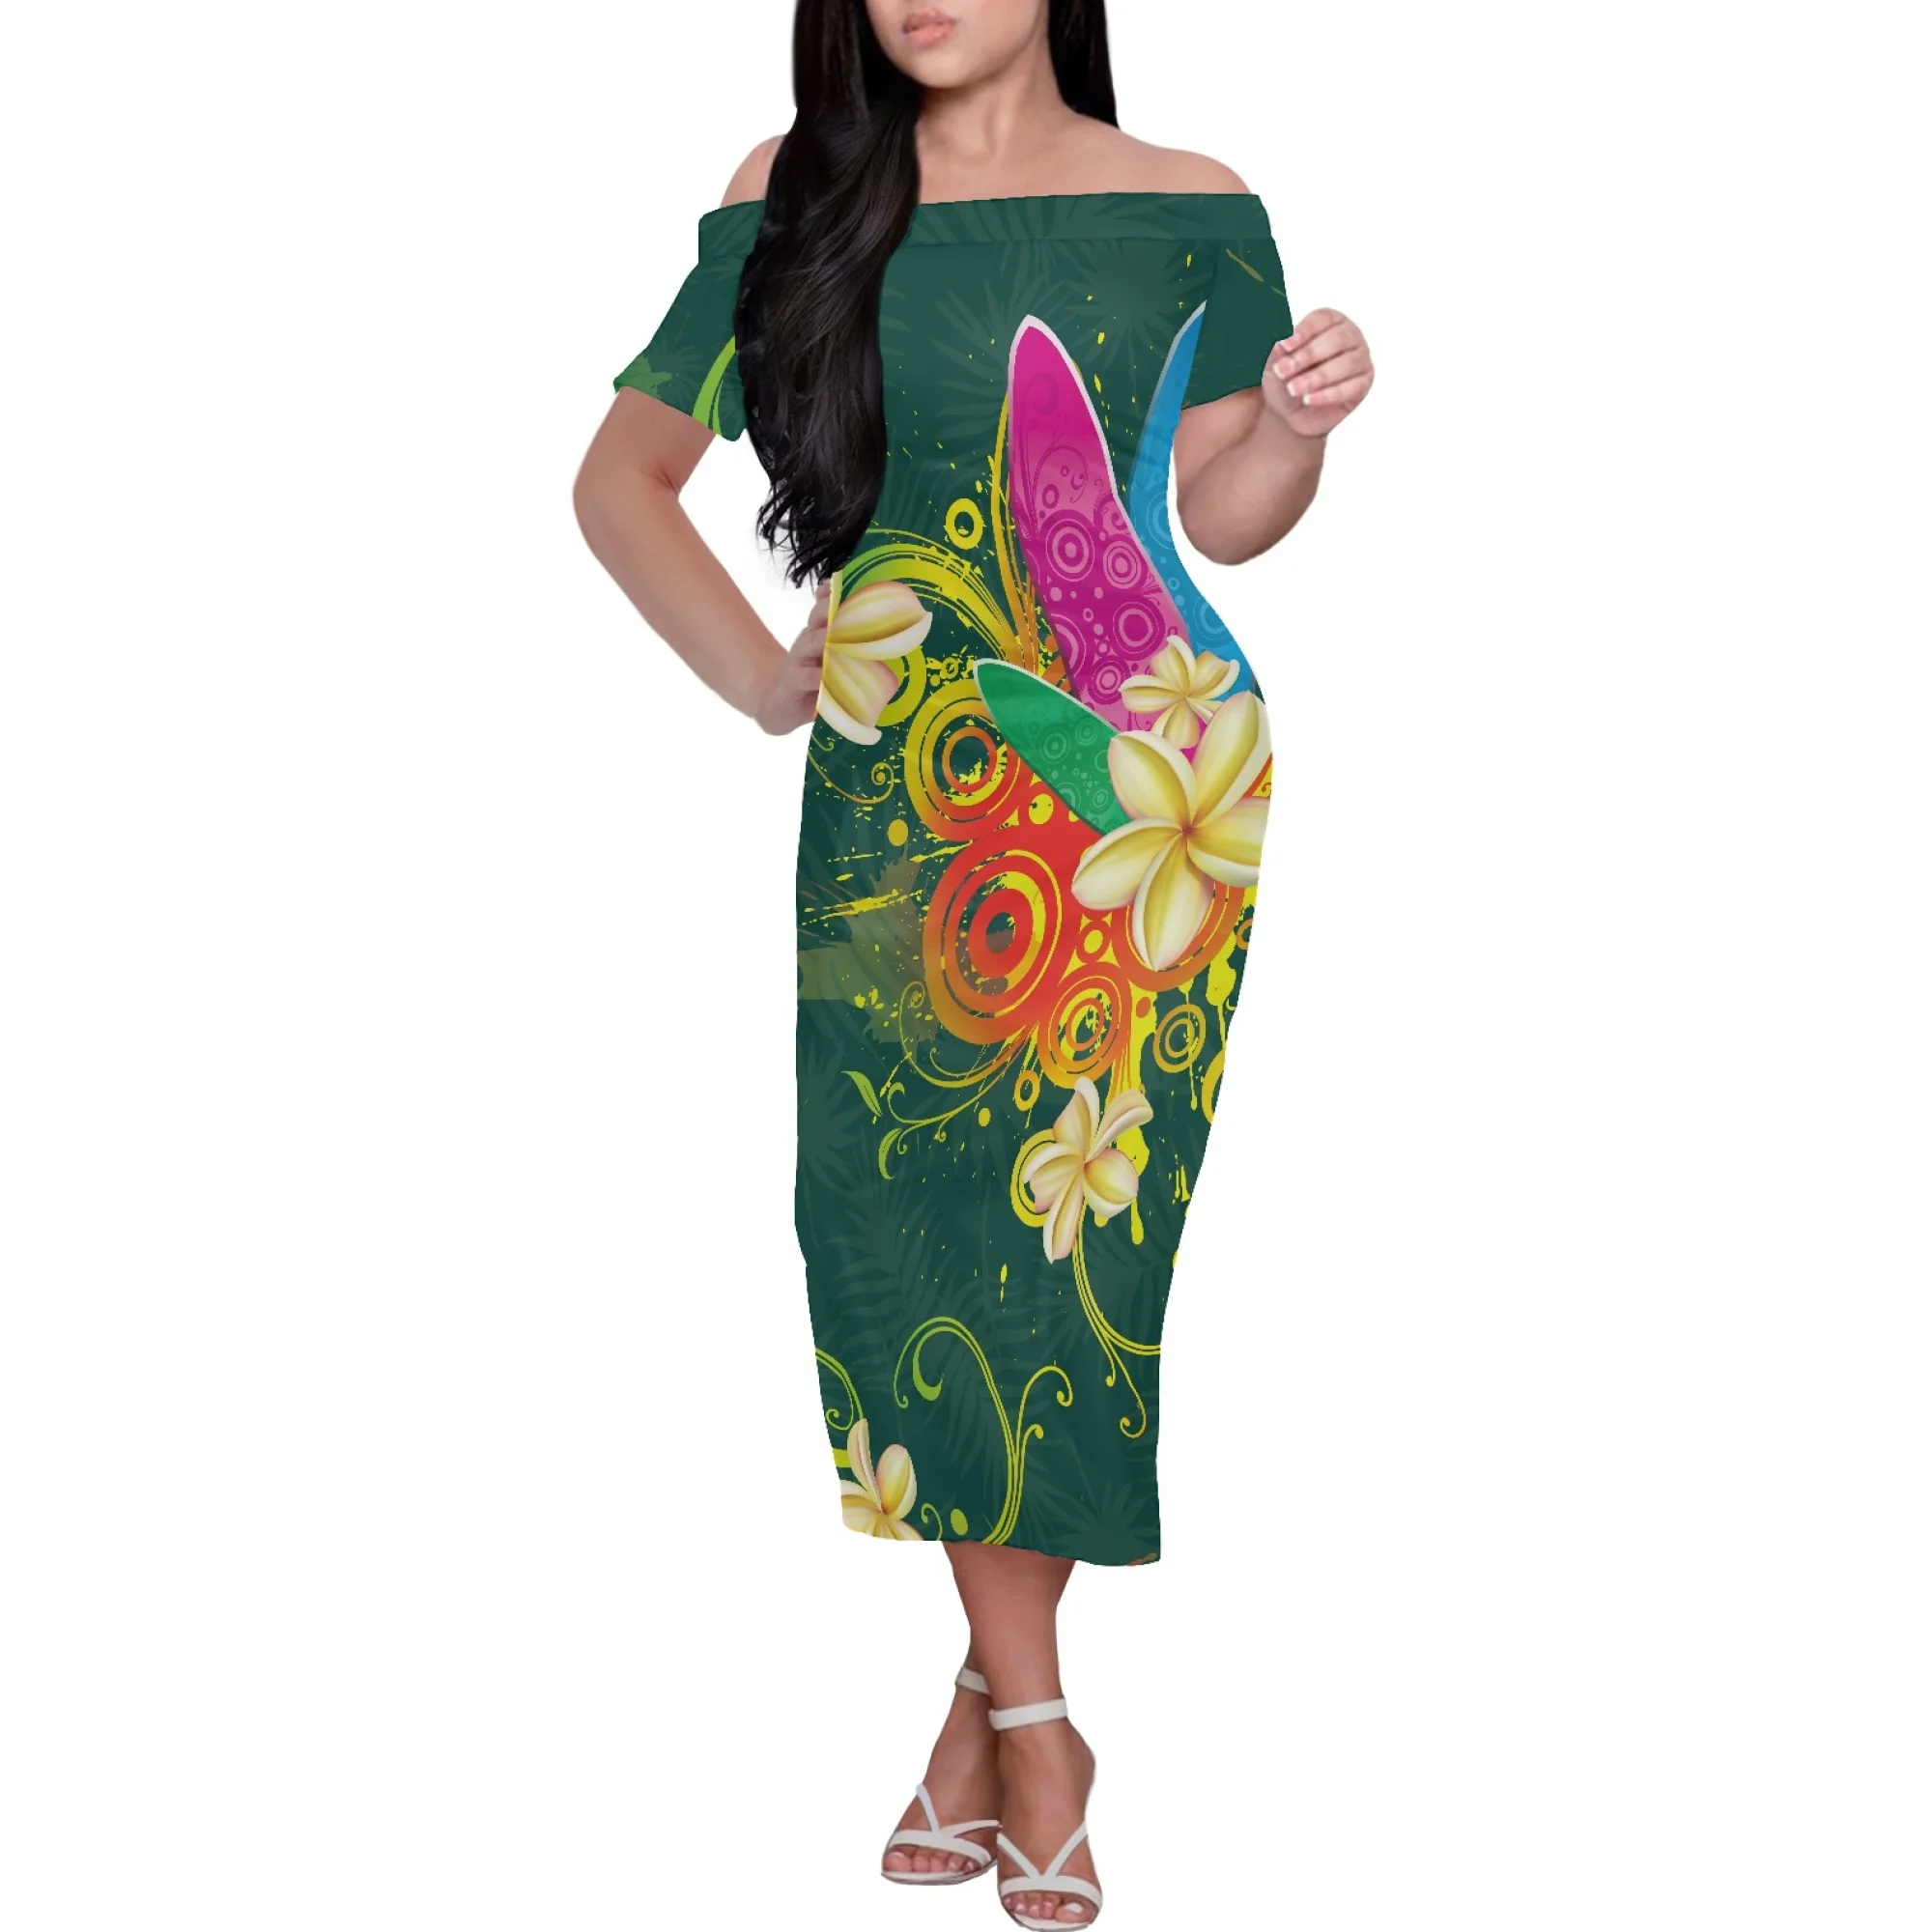 

Морской элемент черепаха принт полинезийское племя Гавайский стиль дизайн или вырез садовое платье с коротким рукавом имитация роскоши